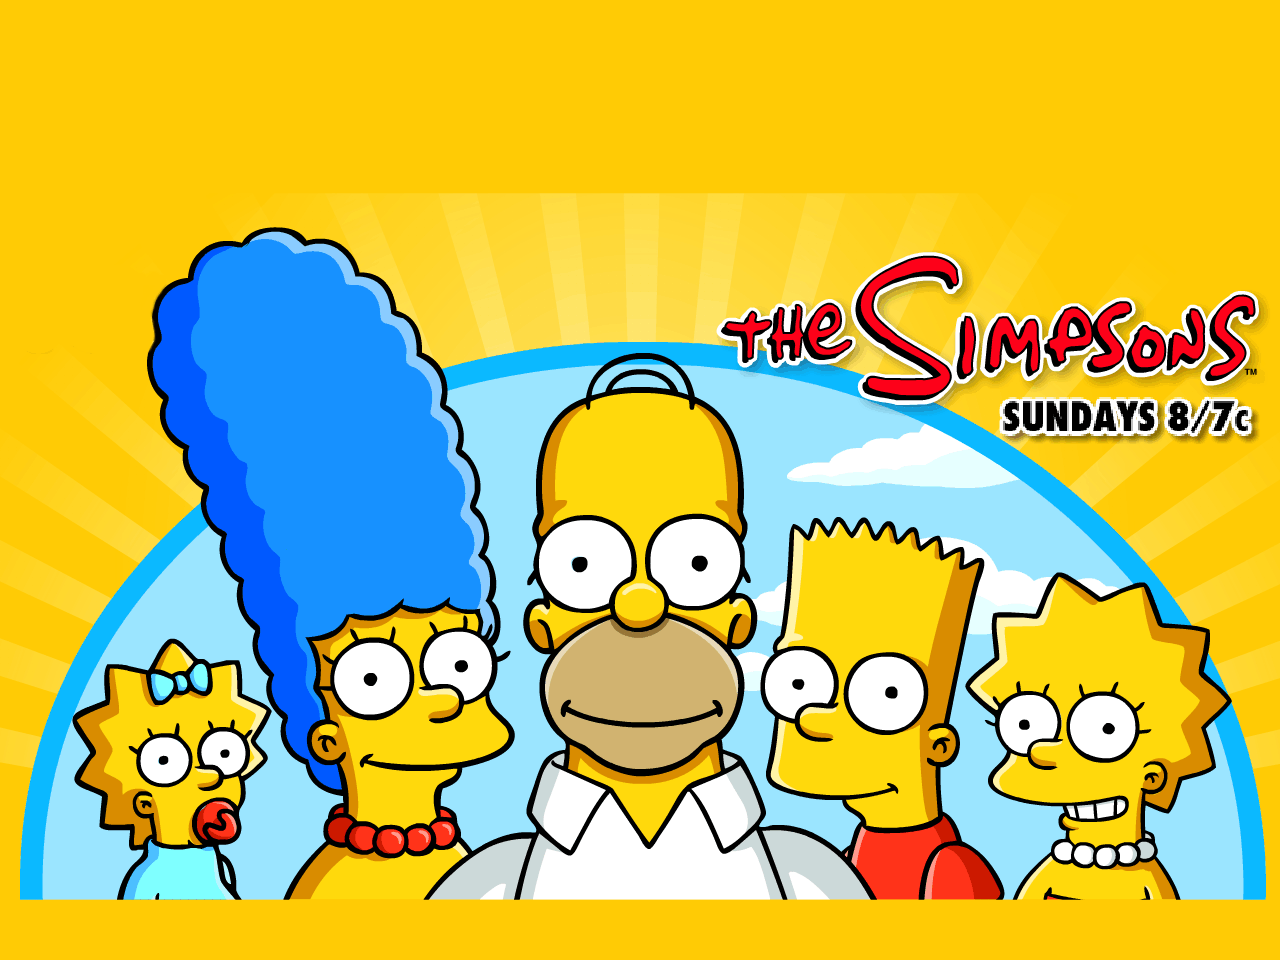 Bart Simpson Homer Simpson Lisa Simpson Maggie Simpson Marge Simpson The Simpsons 1280x960